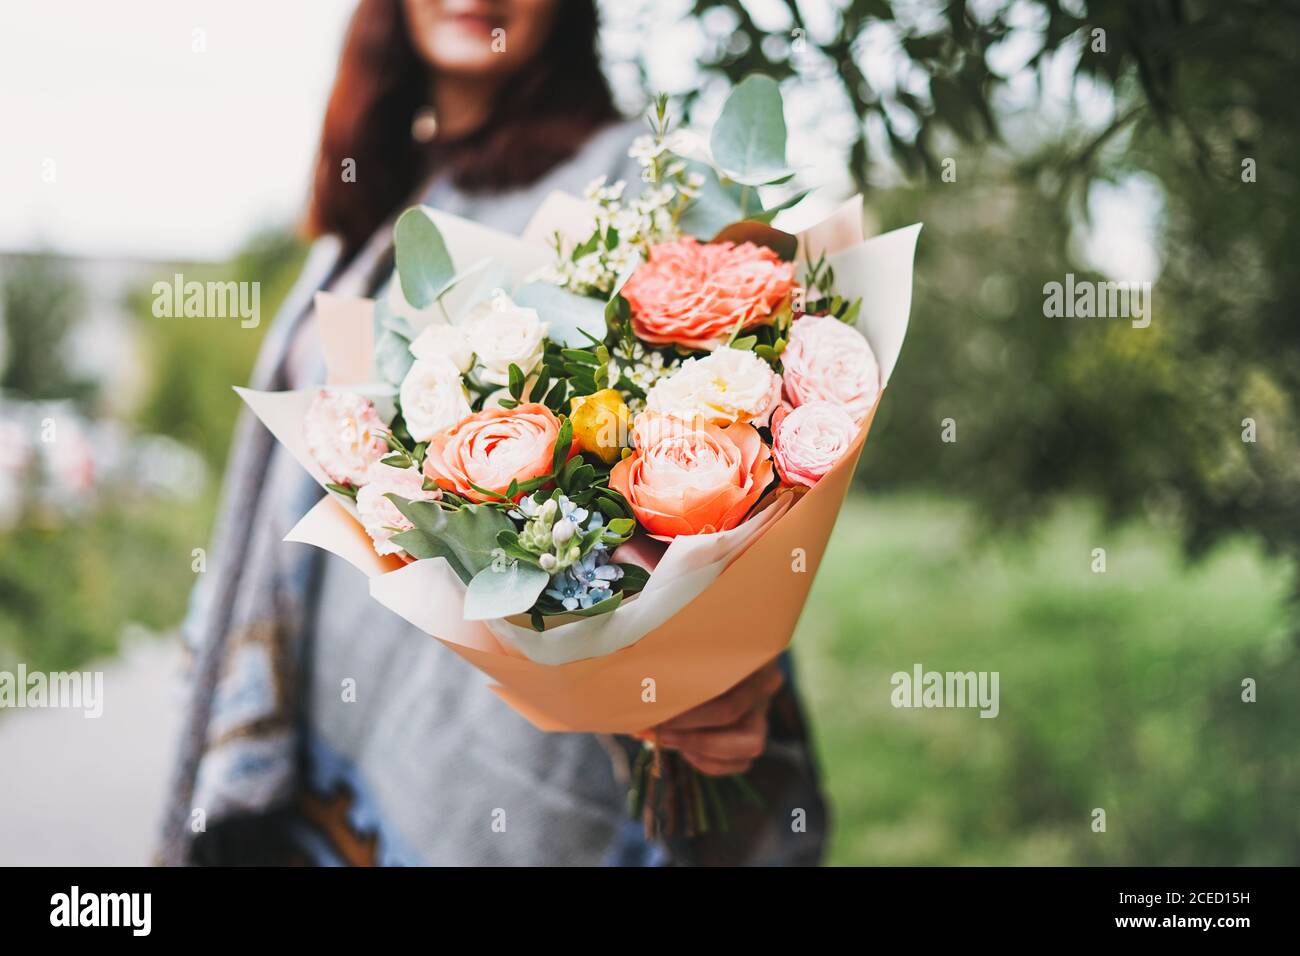 Joven mujer morena en poncho y jeans tiene un hermoso ramo de diferentes flores Foto de stock